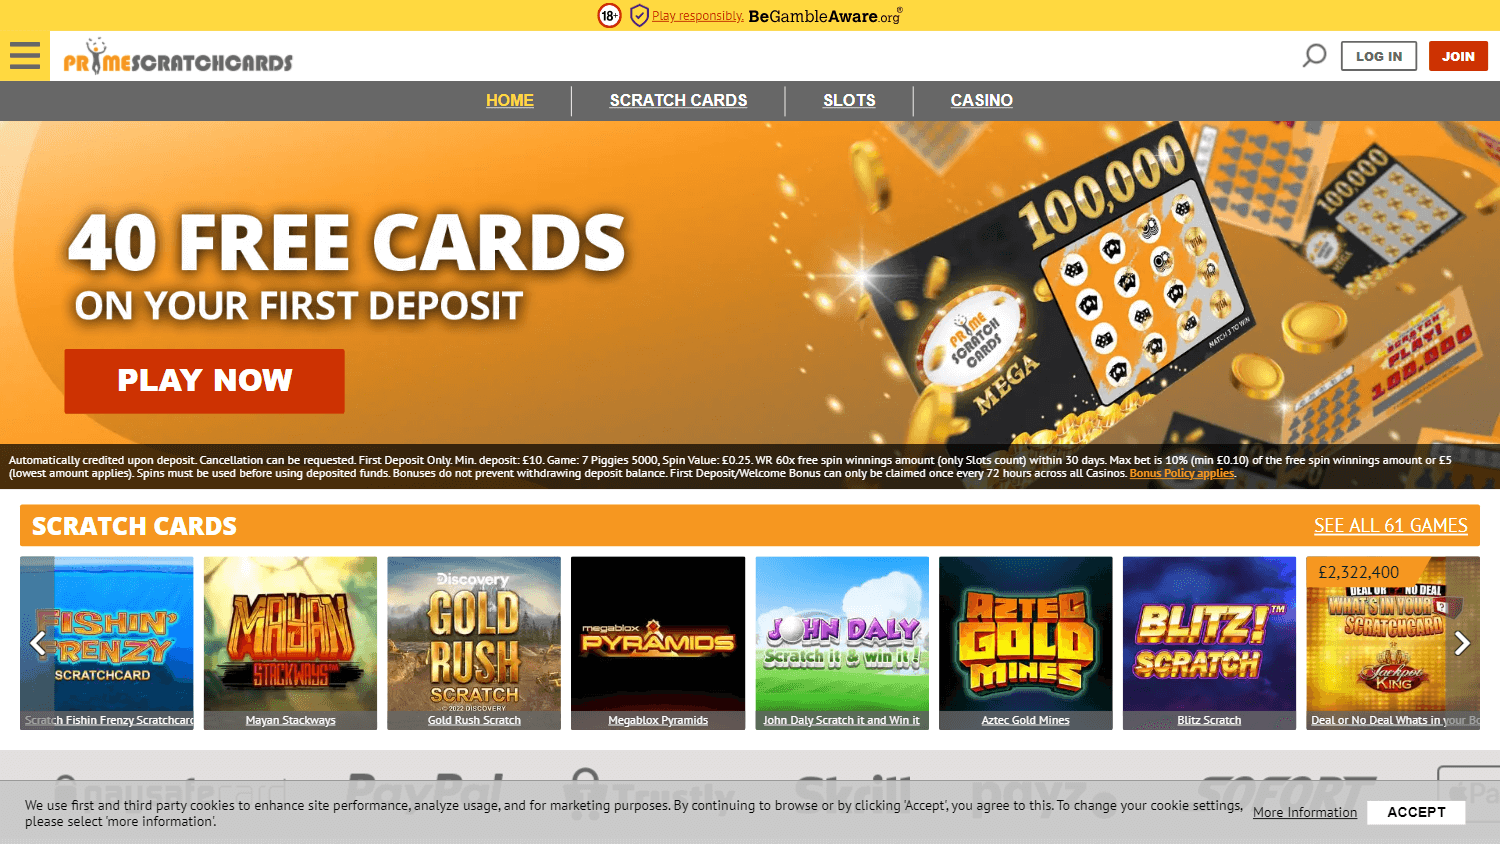 primescratchcards_casino_uk_homepage_desktop